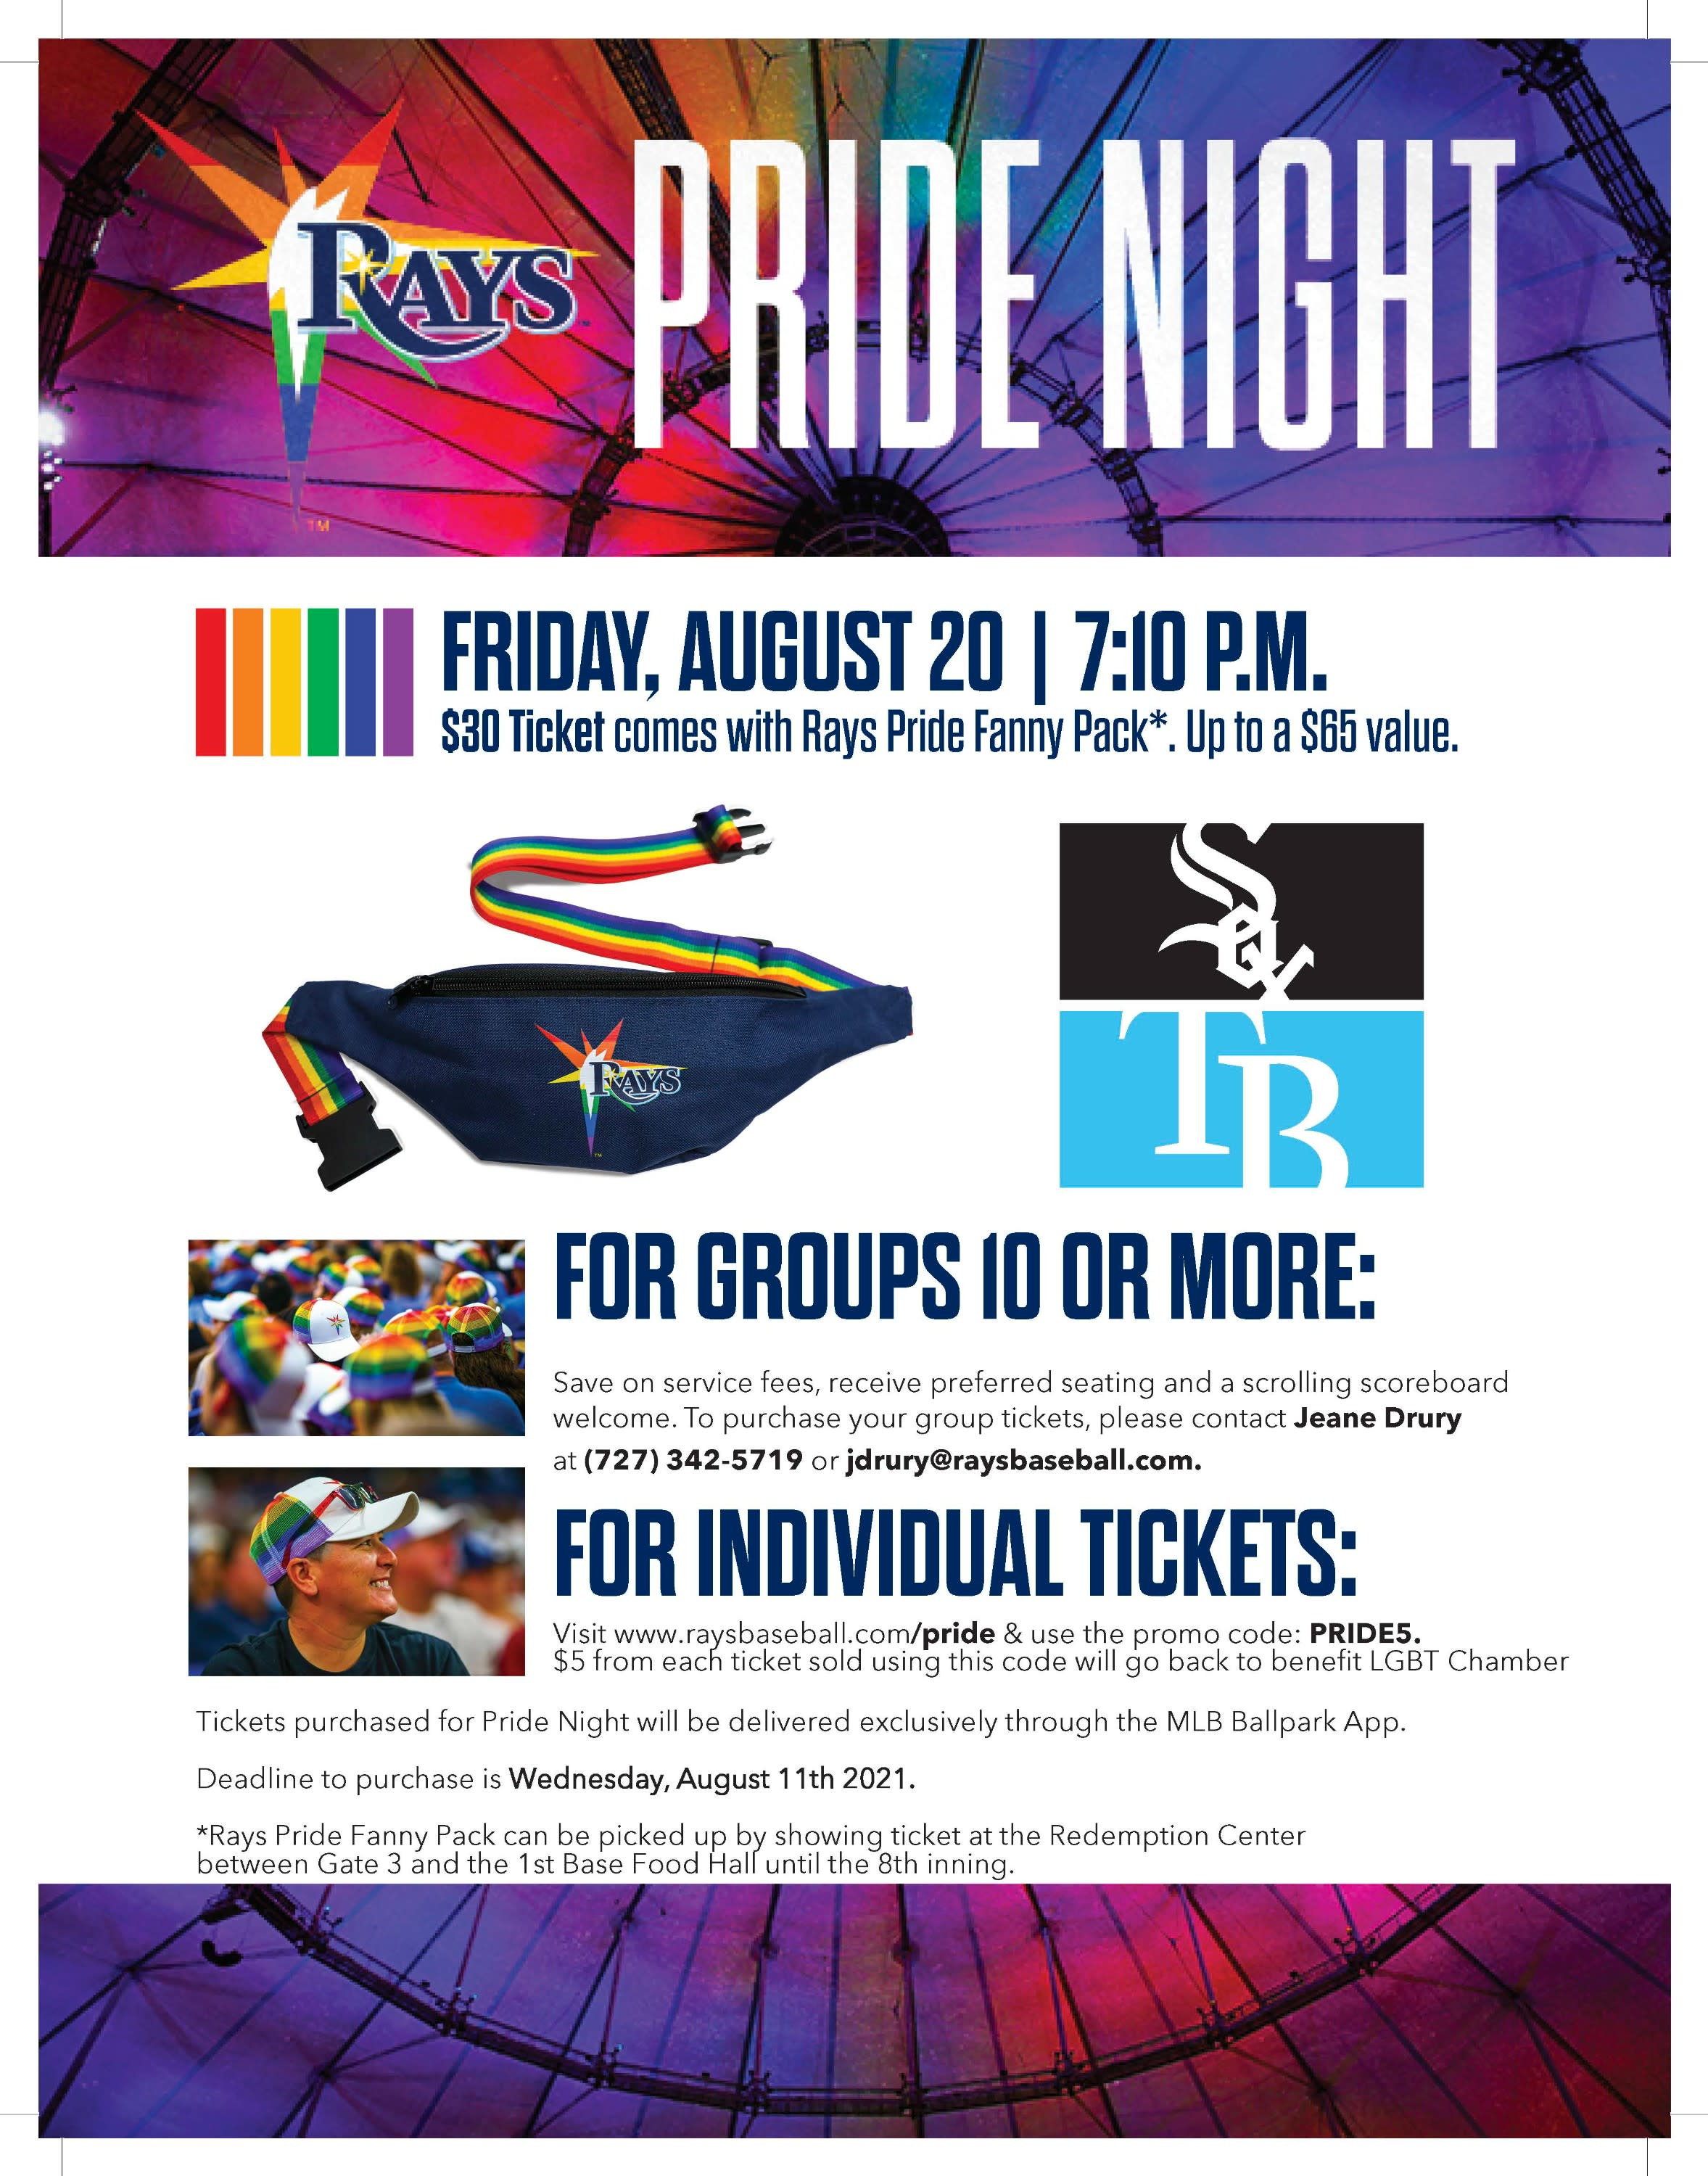 Rays Pride Night, Tampa Bay Rays, Pride Night, Rays, Tampa Bay Rays Pride Night